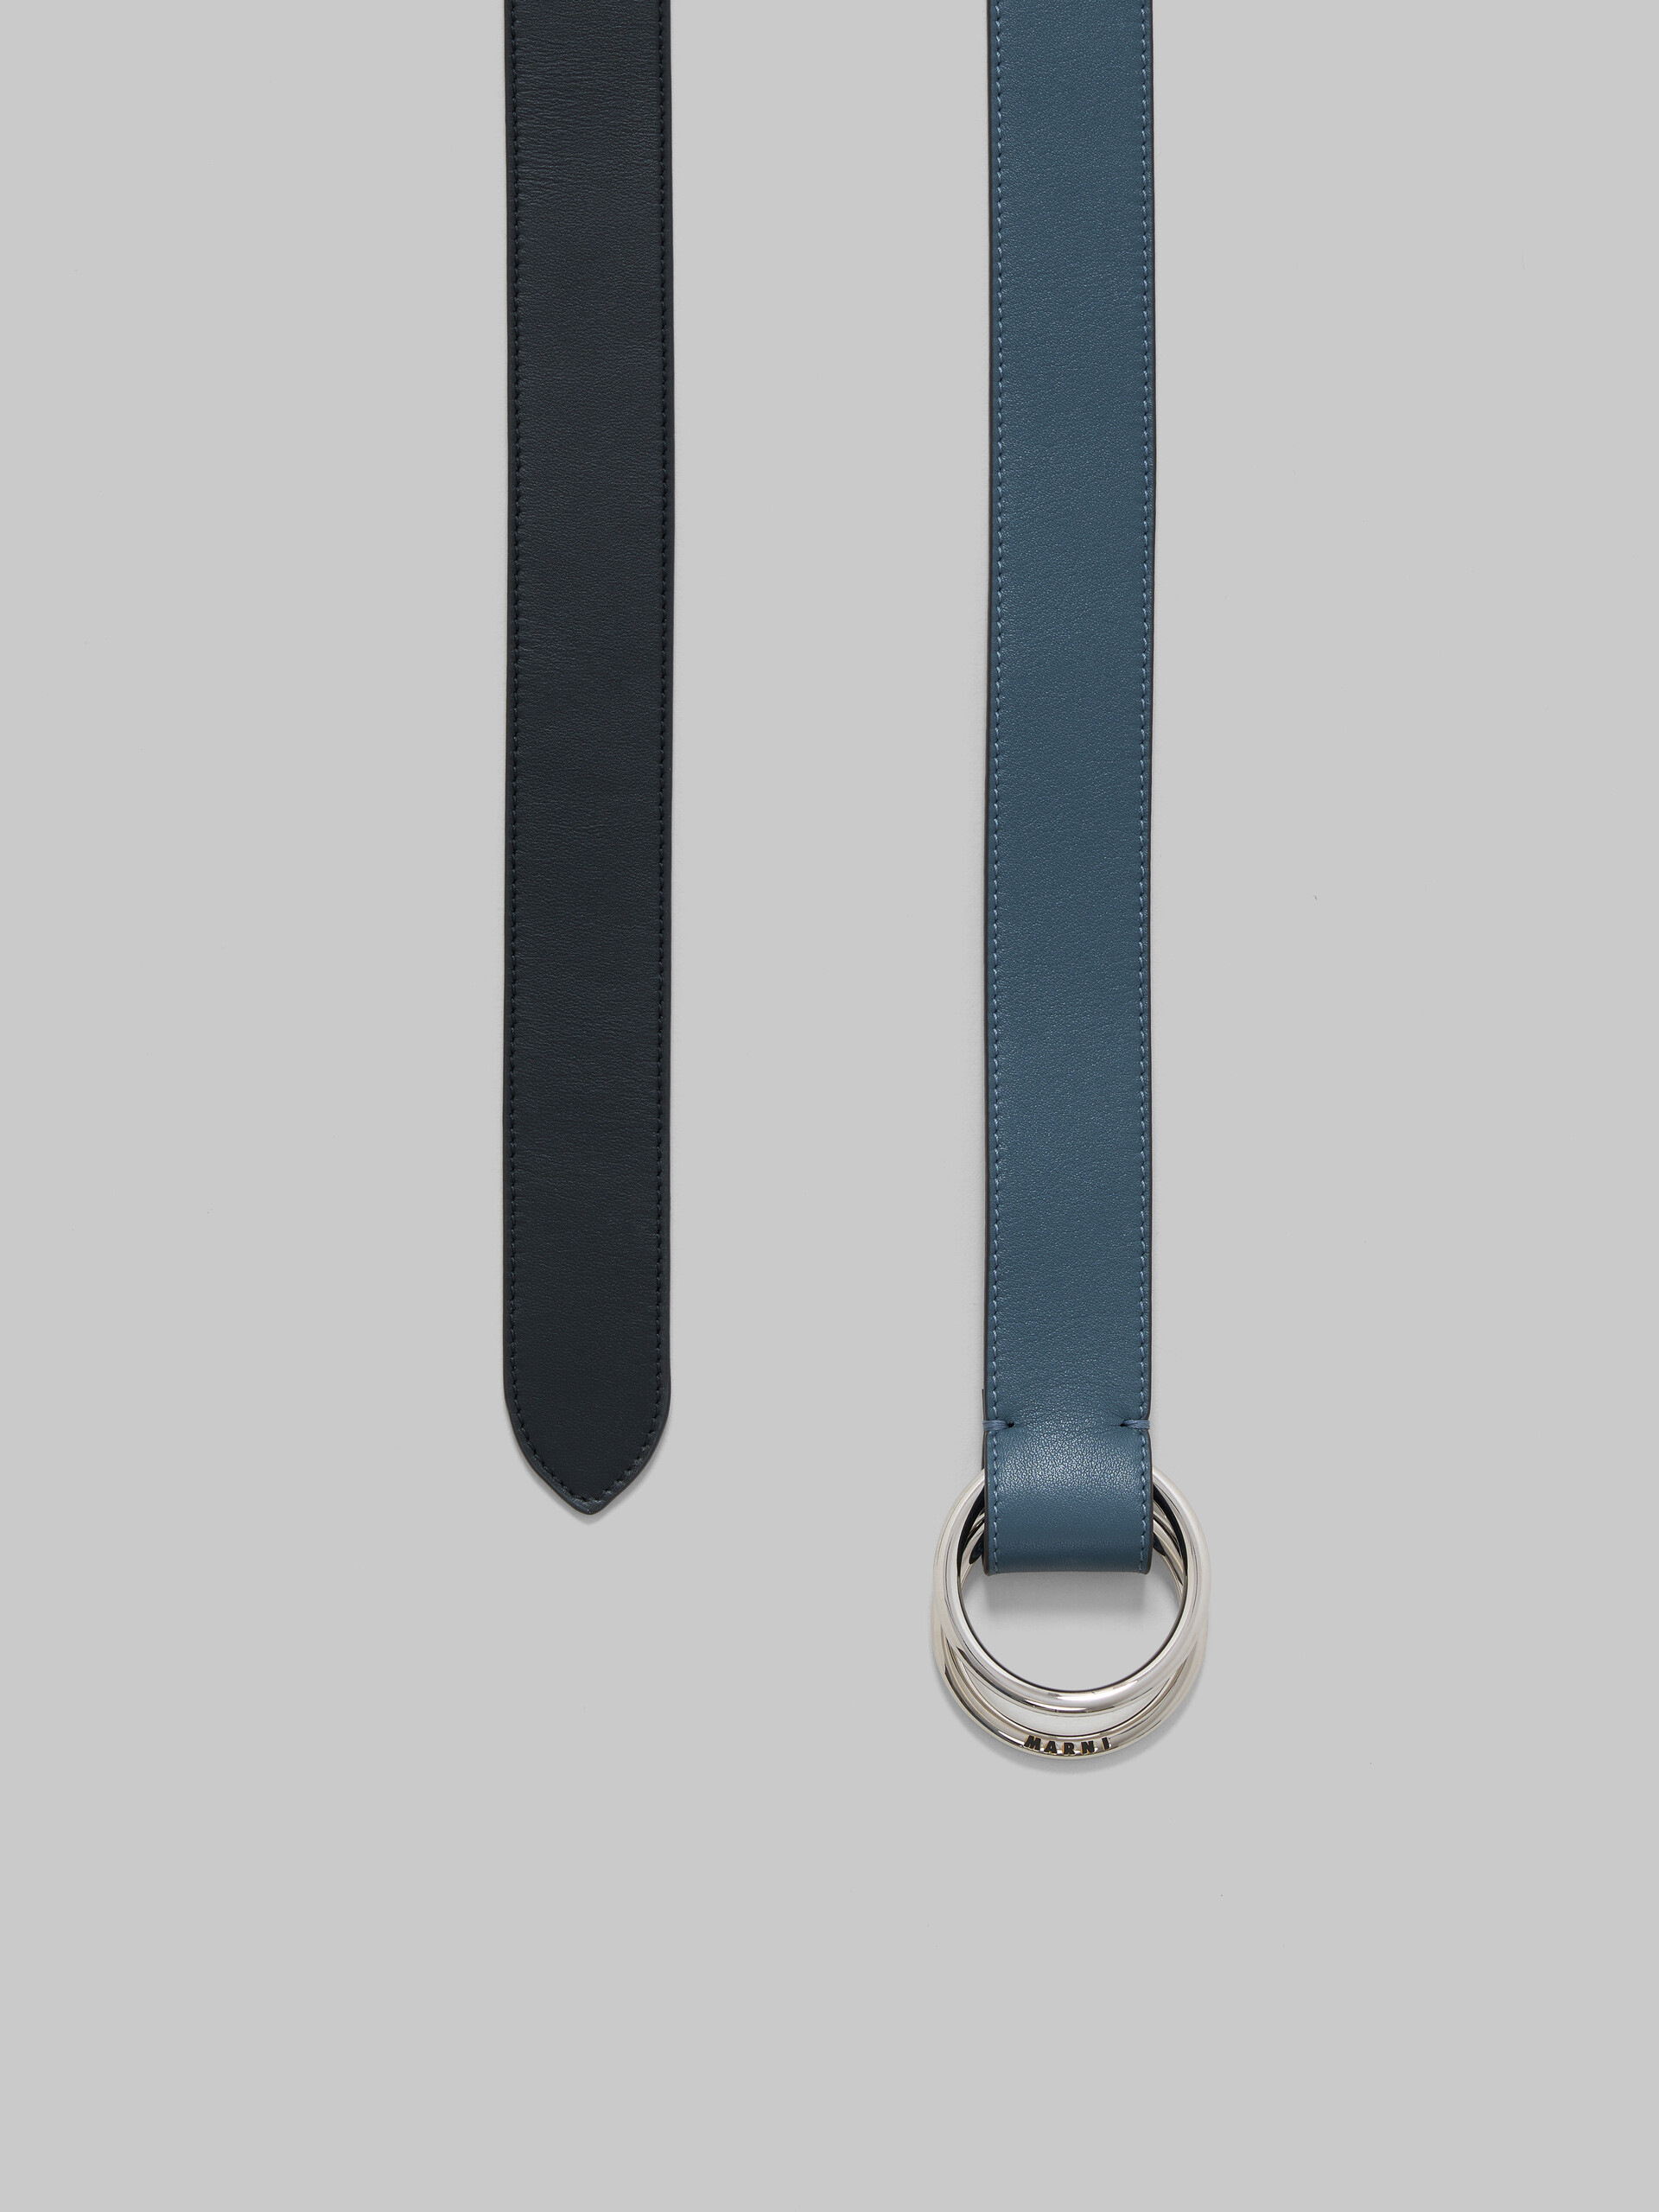 Cintura in pelle nera e blu con fibbia ad anello - Cintura - Image 3